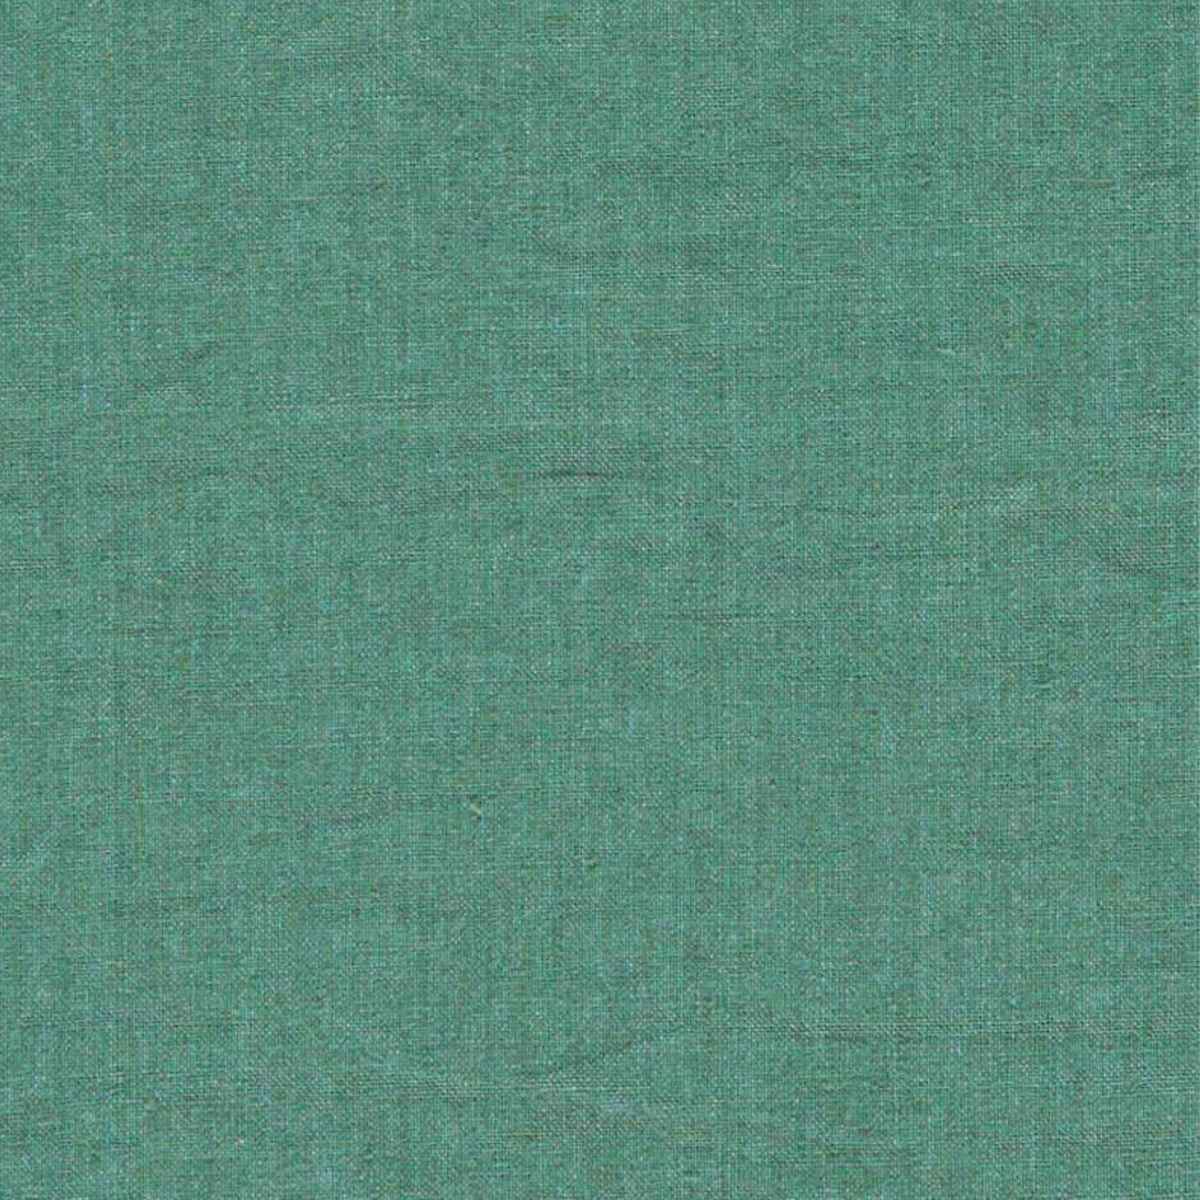 Sanderson X Salvesen Graham &#39;Rue Linen - Evergreen&#39; Fabric